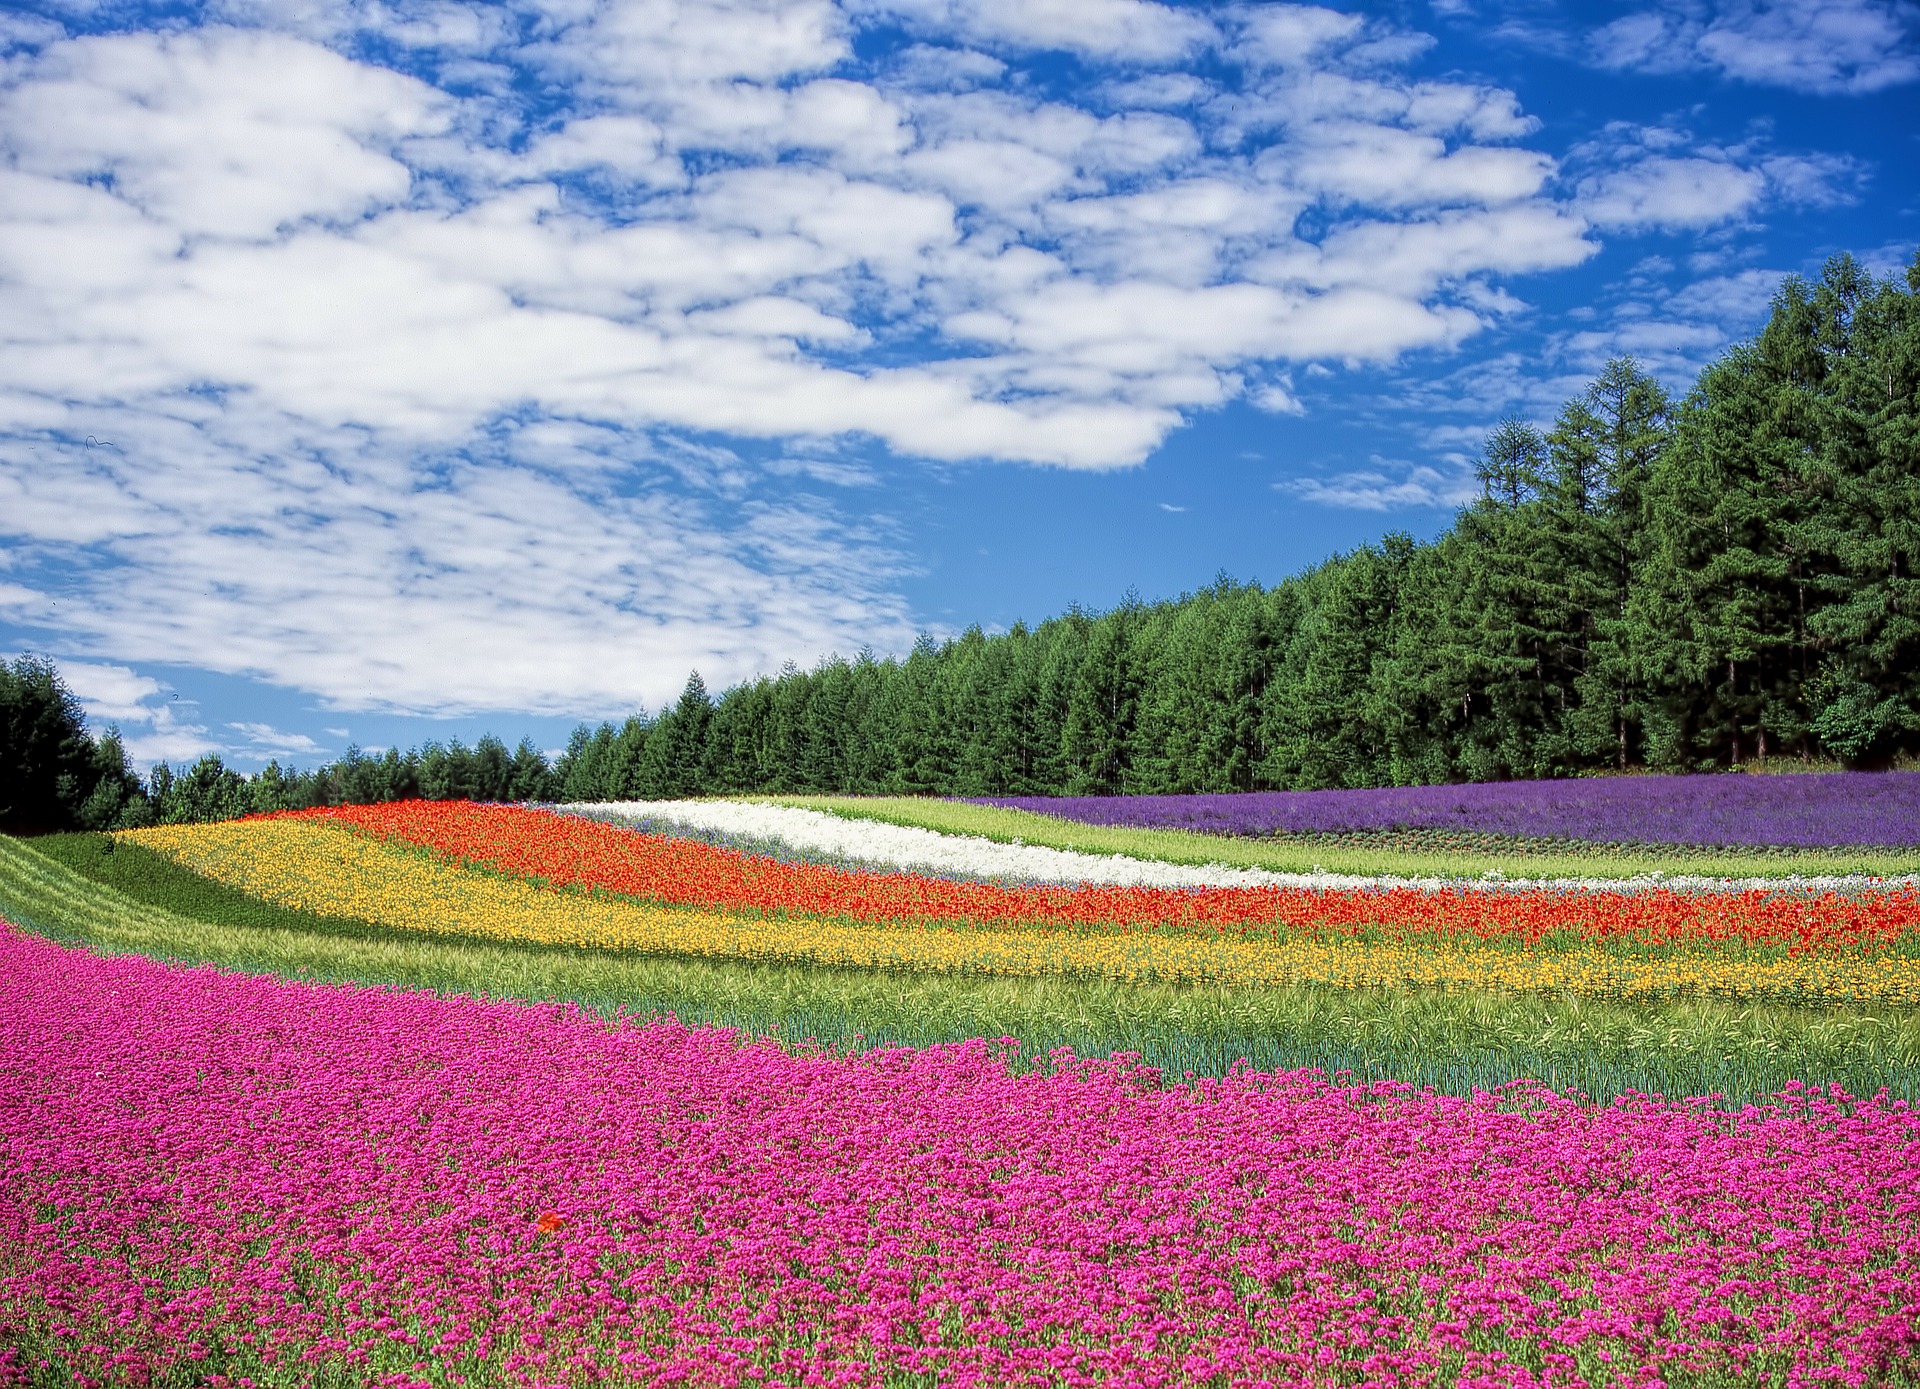 Nature, champ de fleurs © Pixabay CC0 - DeltaWorks